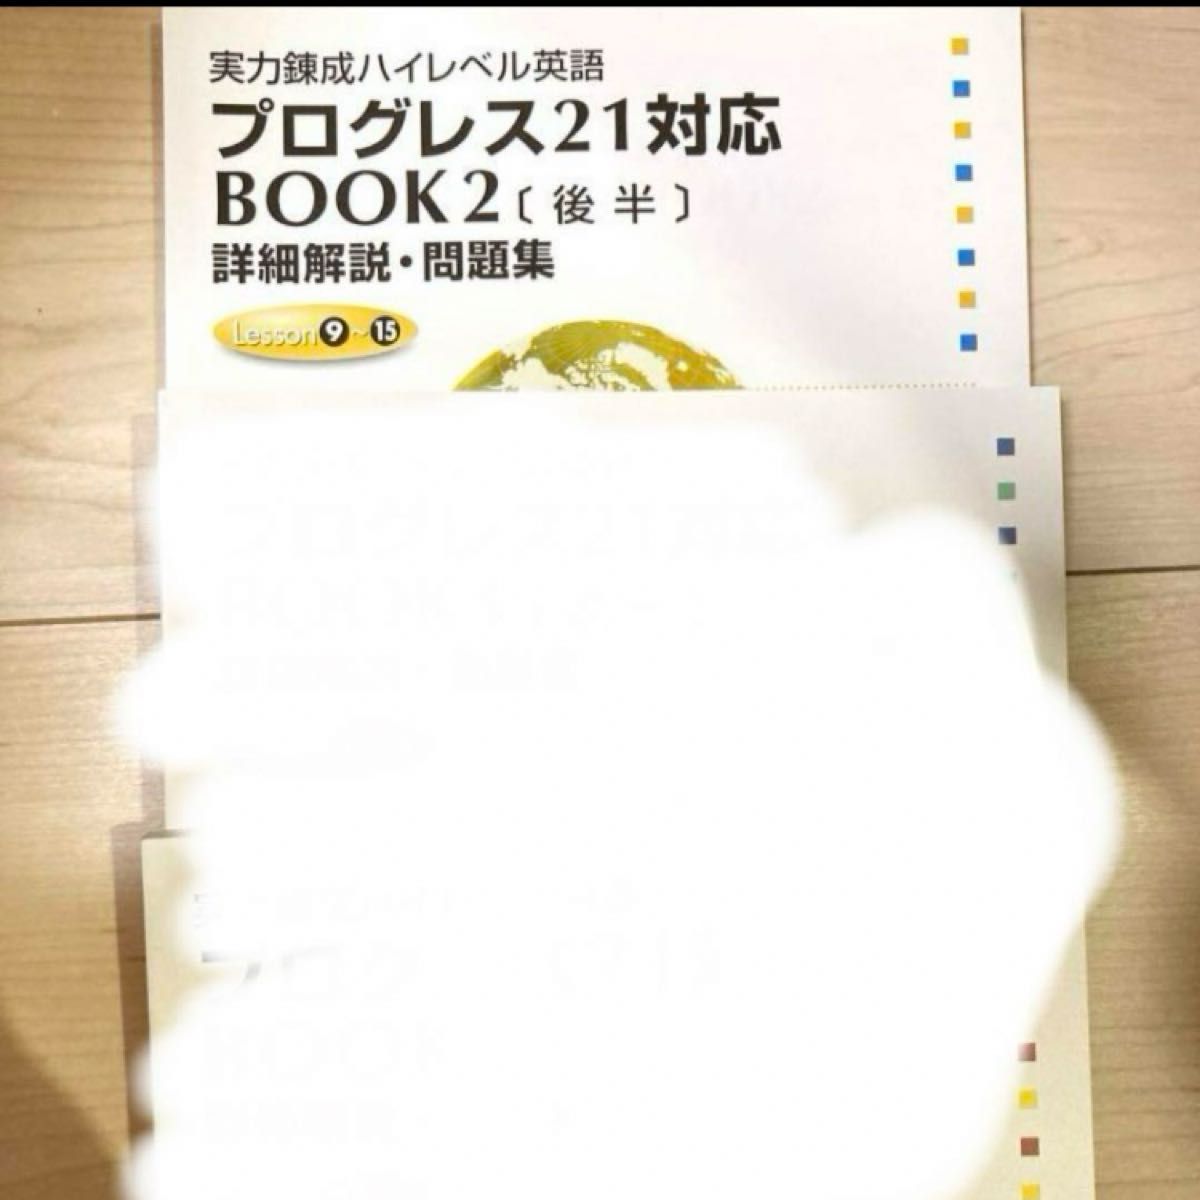 Book2後半 実力錬成ハイレベル英語 プログレス21対応 進研ゼミ